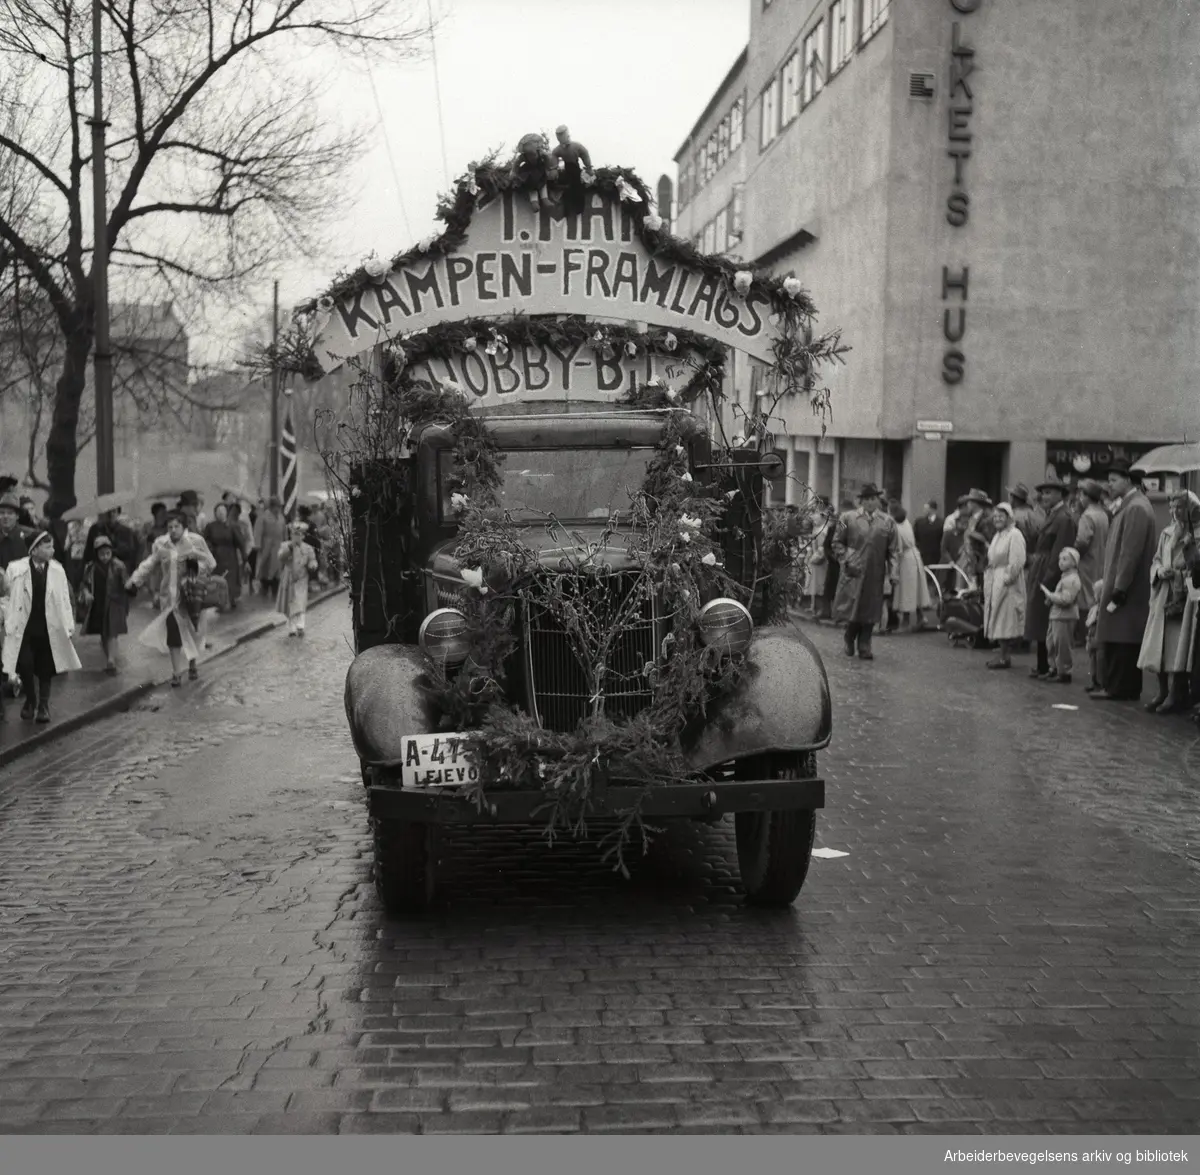 1. mai 1954 i Oslo.Framfylkingens barnetog.Kampen framlags hobbybil...